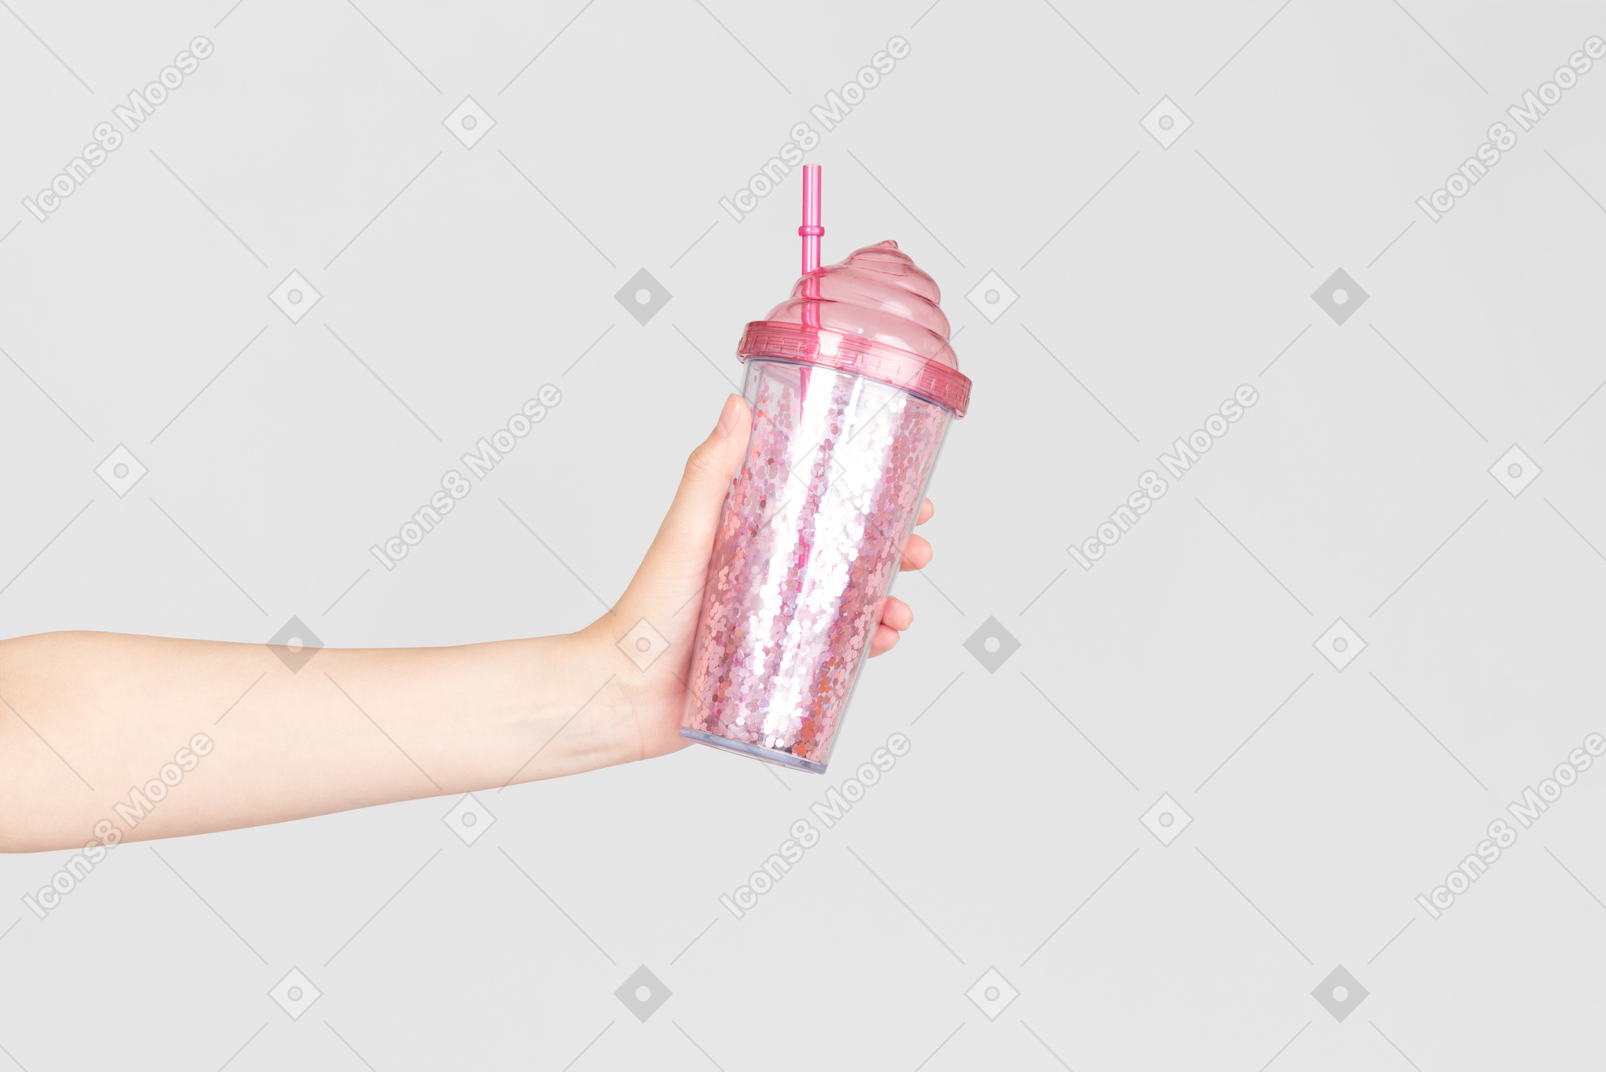 ピンクのプラスチック製のコップを持っている女性の手